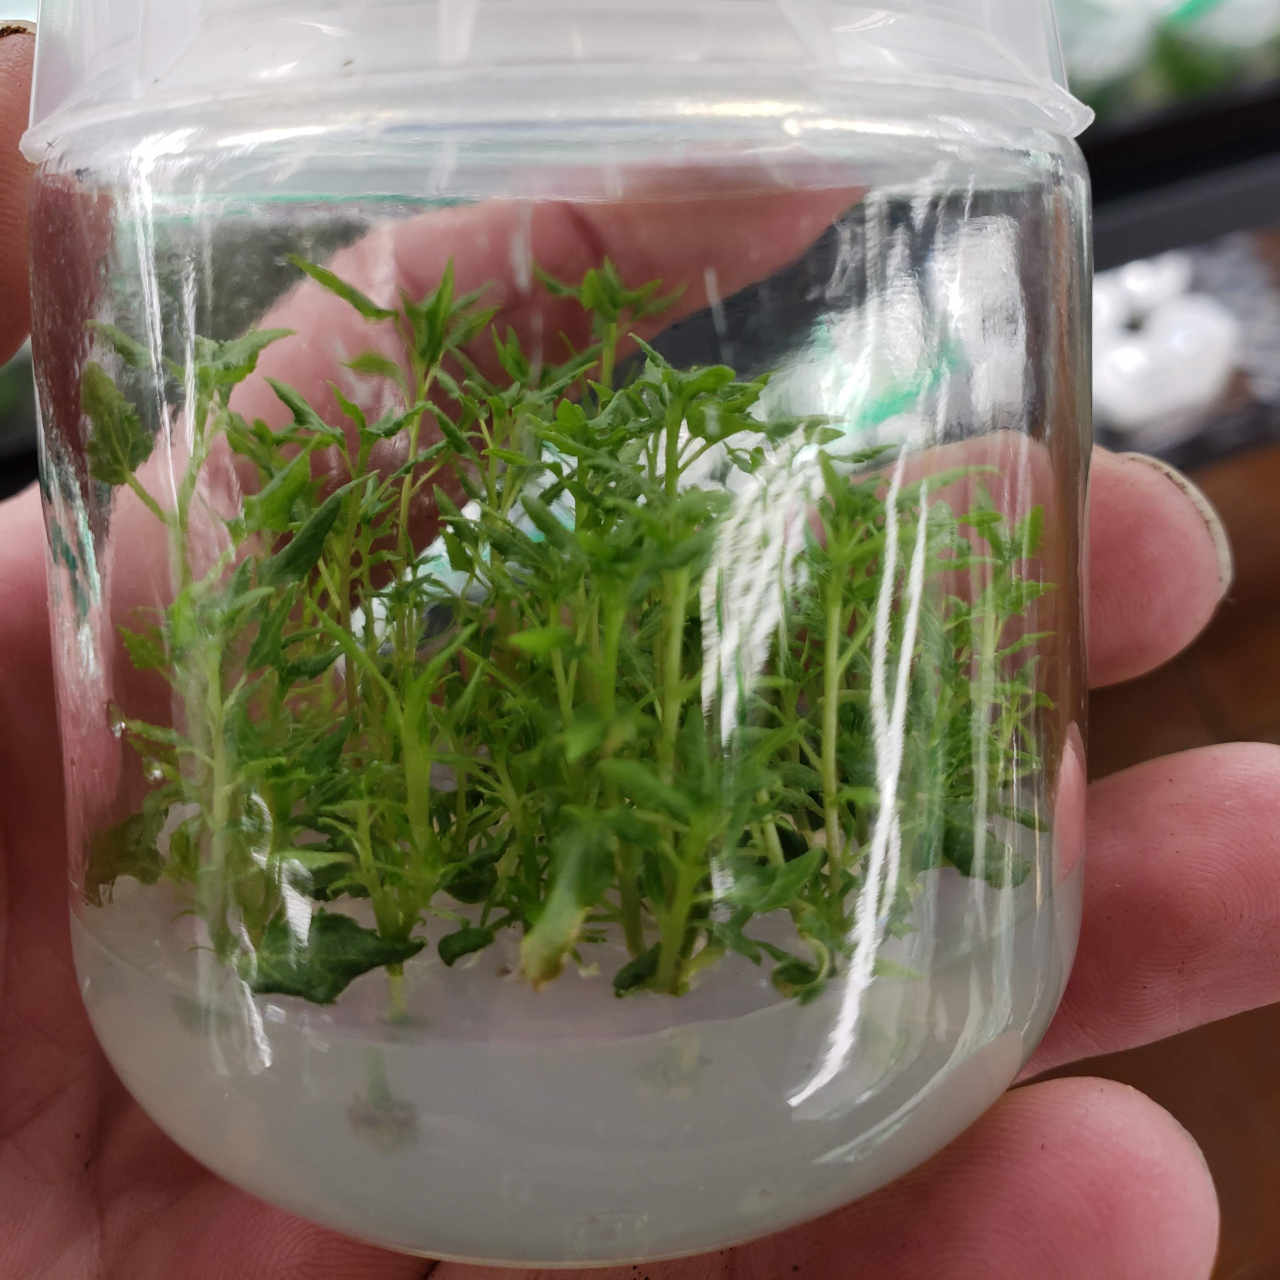 Lots of little plants in a jar